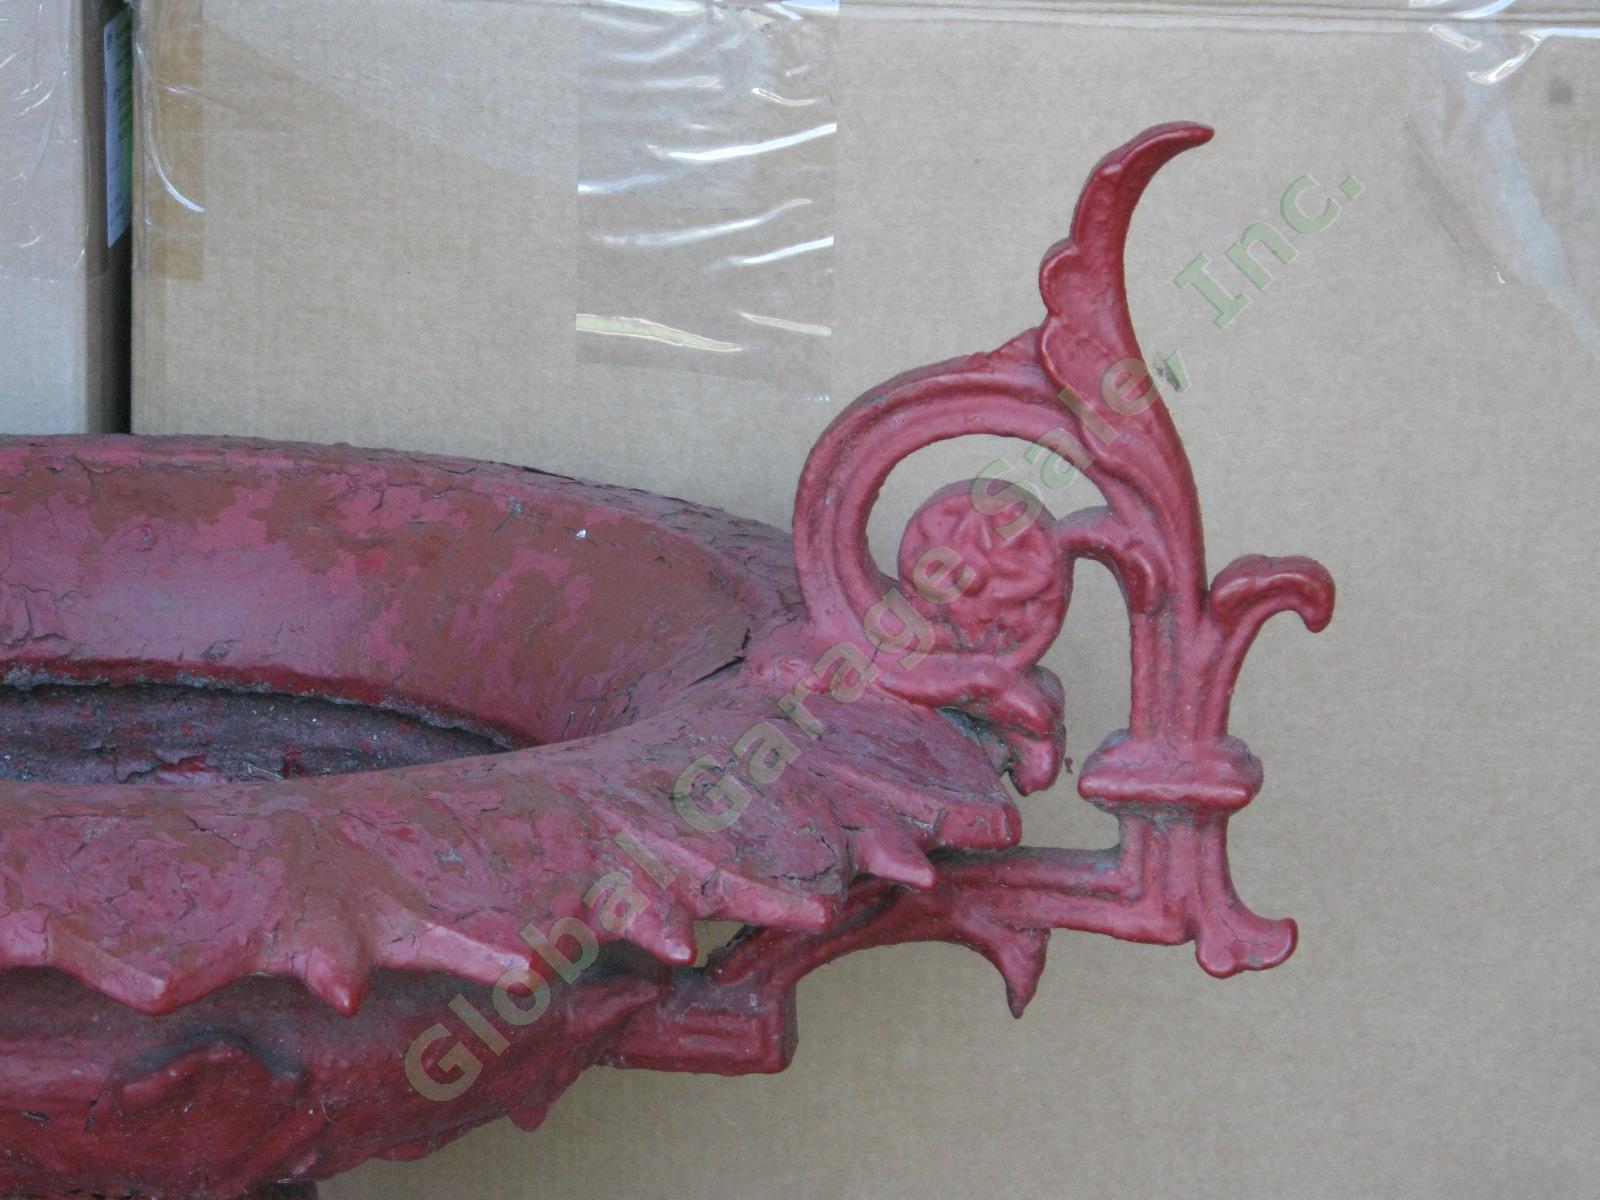 Gorgeous Vintage Antique Ornate Cast Iron Garden Urn Planter Bird Bath 24" Tall 1